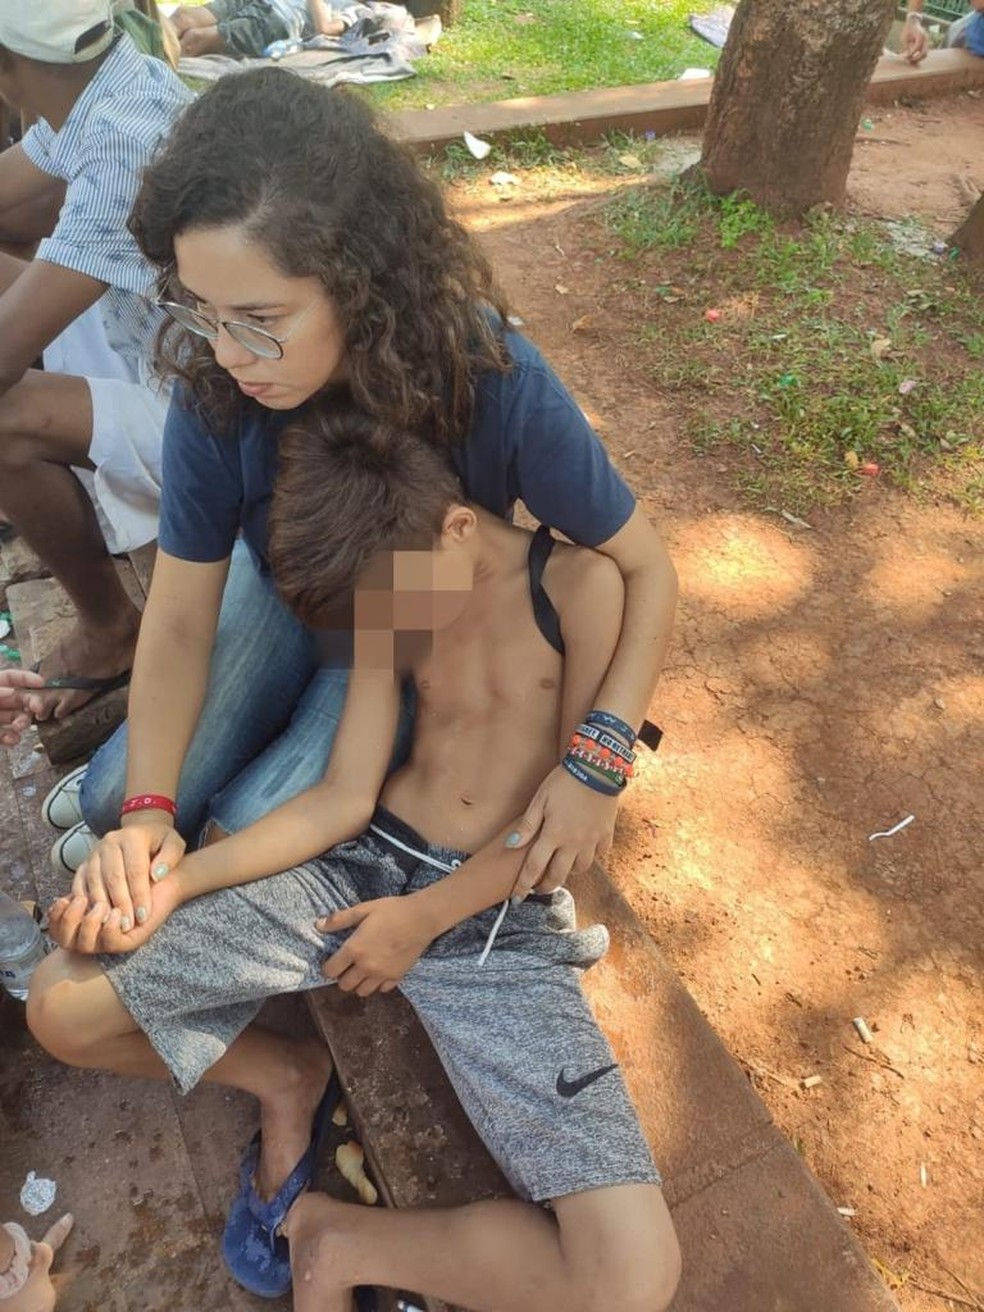 Integrante de ONG ajuda criança que utilizou droga K — Foto: Arquivo pessoal